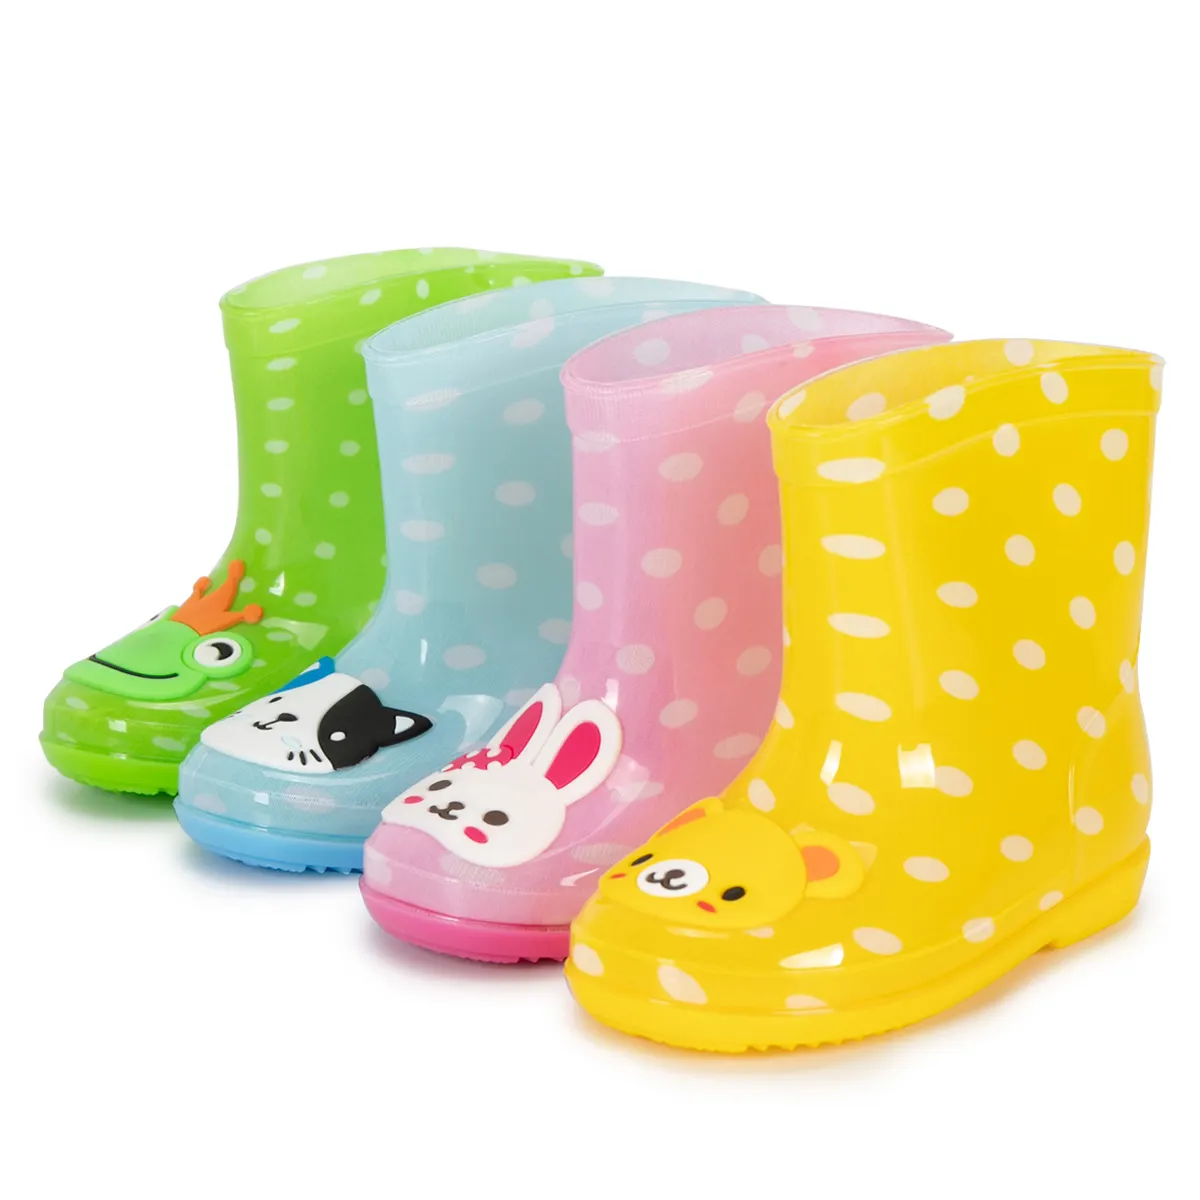 Moda peso leve estação chuvosa animais dos desenhos animados antiderrapante desgaste-Resistantr botas de chuva impermeável para crianças